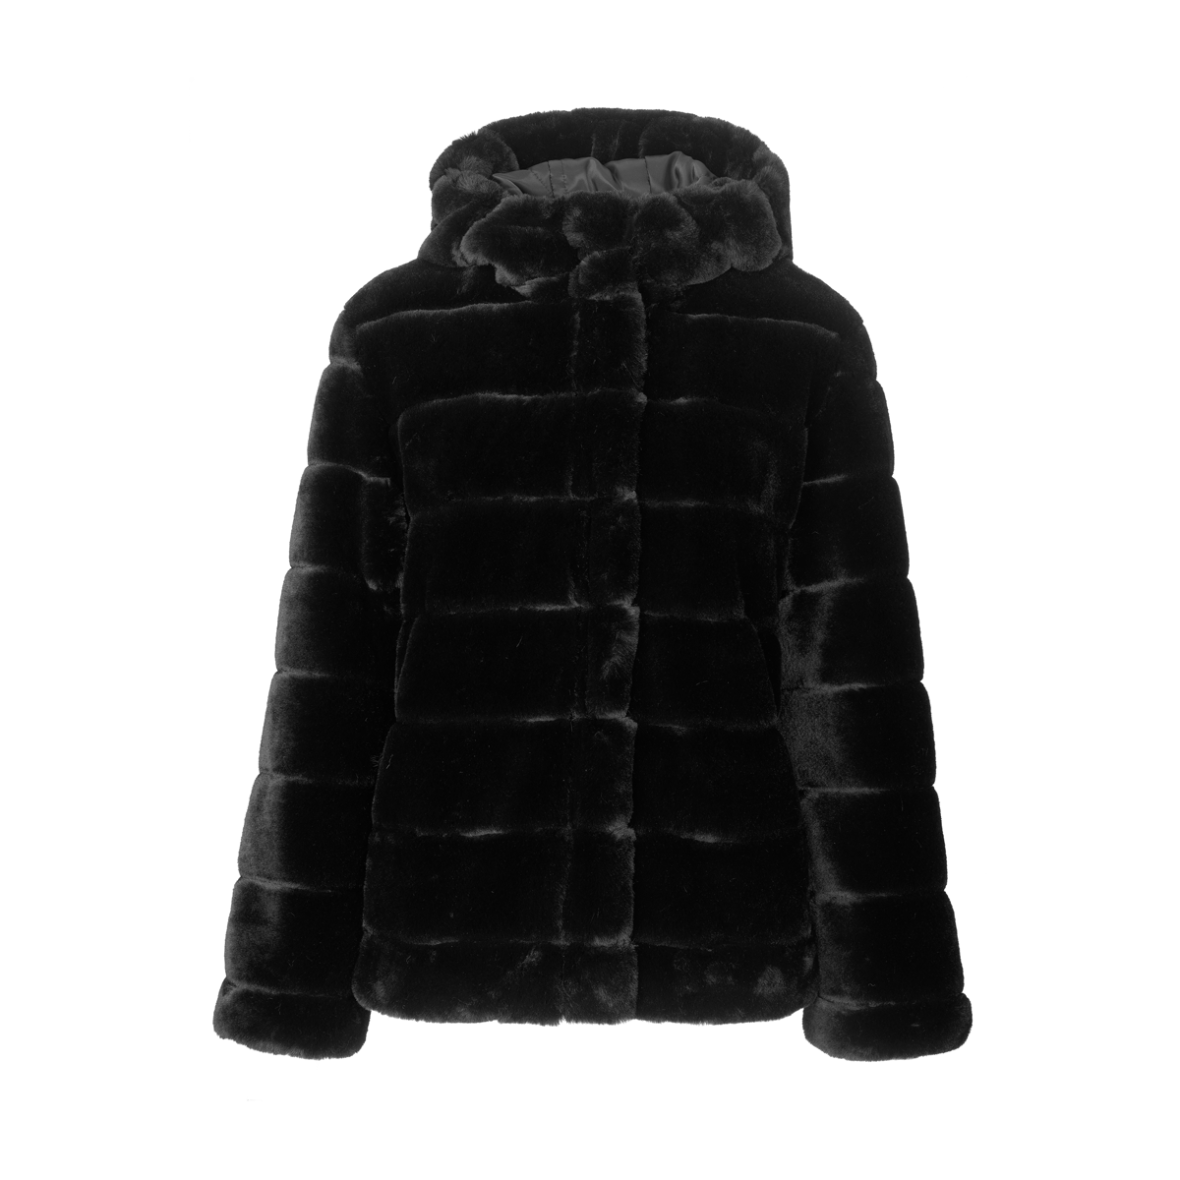 patron forbinde Evaluering Samsøe & Samsøe samsøe jakke saba 7309 pels - Shop online nu